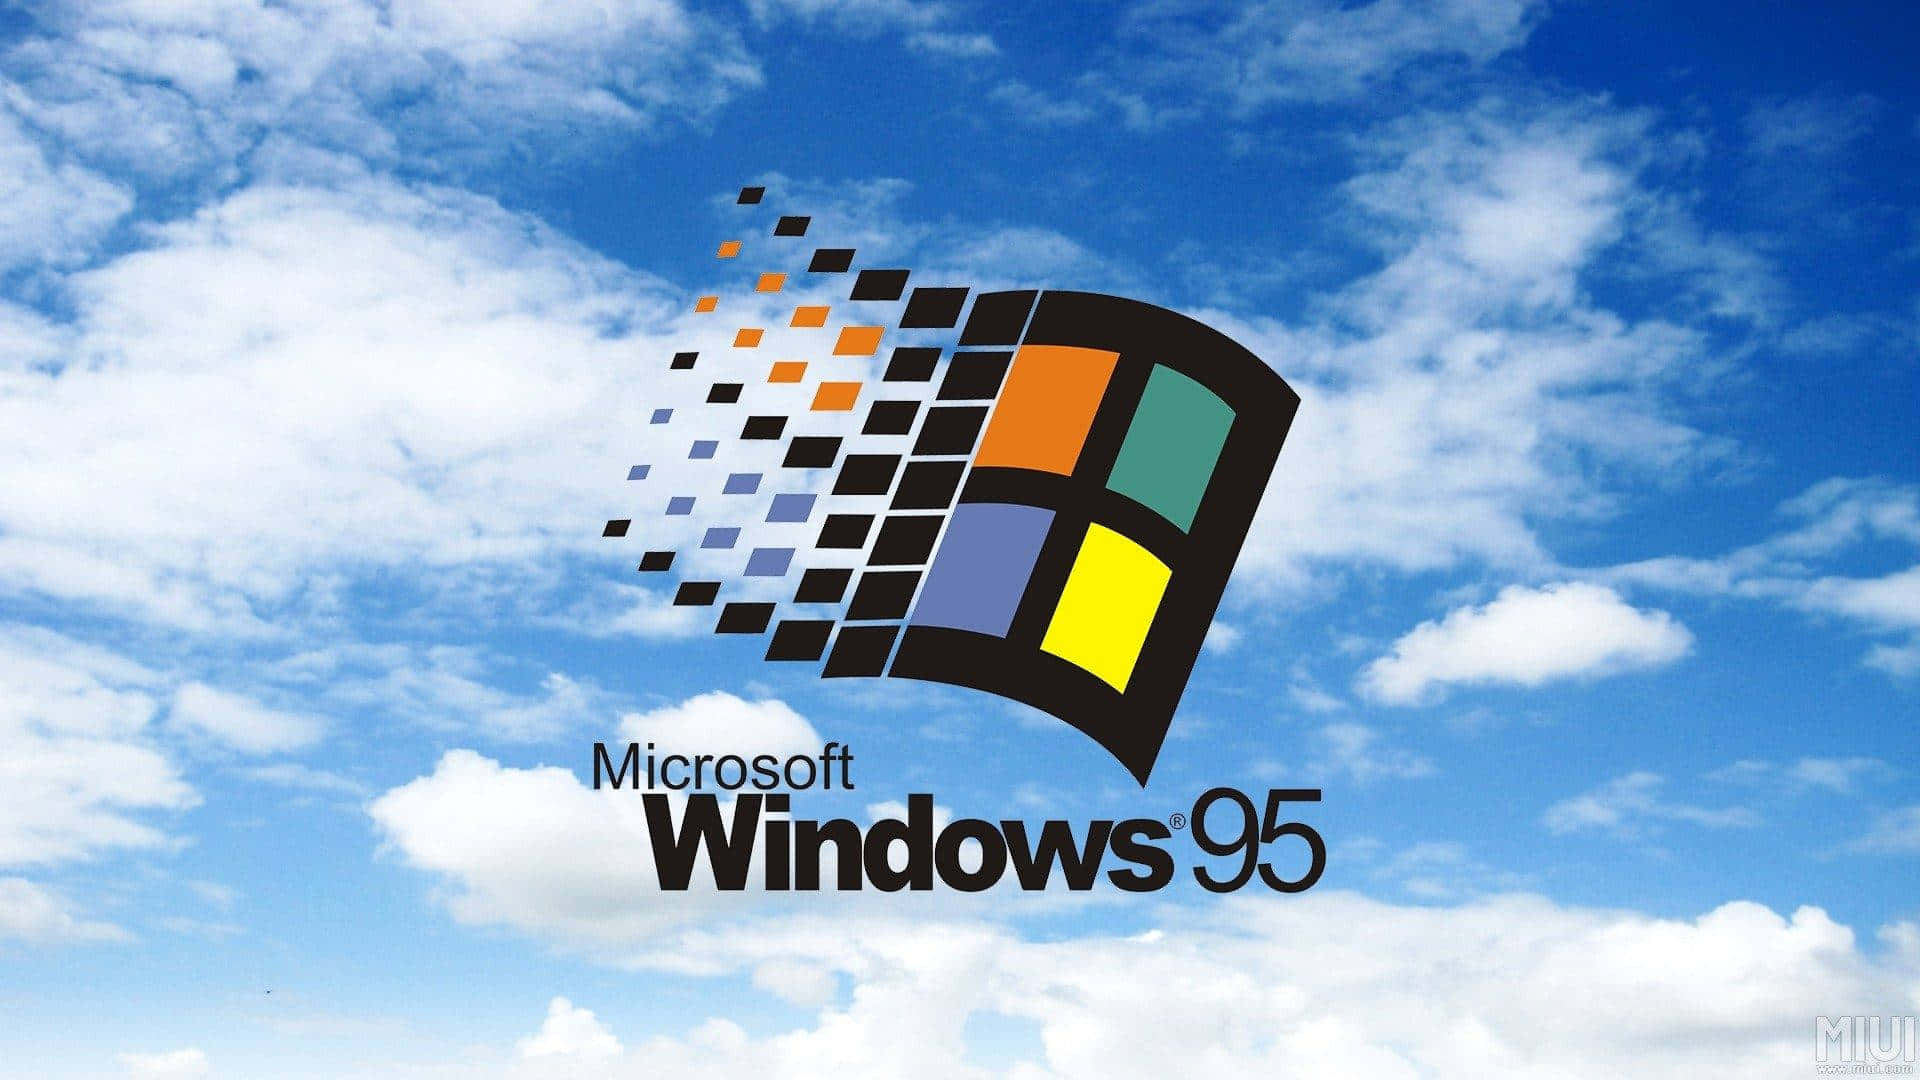 Njutav Den Nostalgiska Designen Från Windows 95 På Ditt Datorskrivbord Eller Mobilskärm.